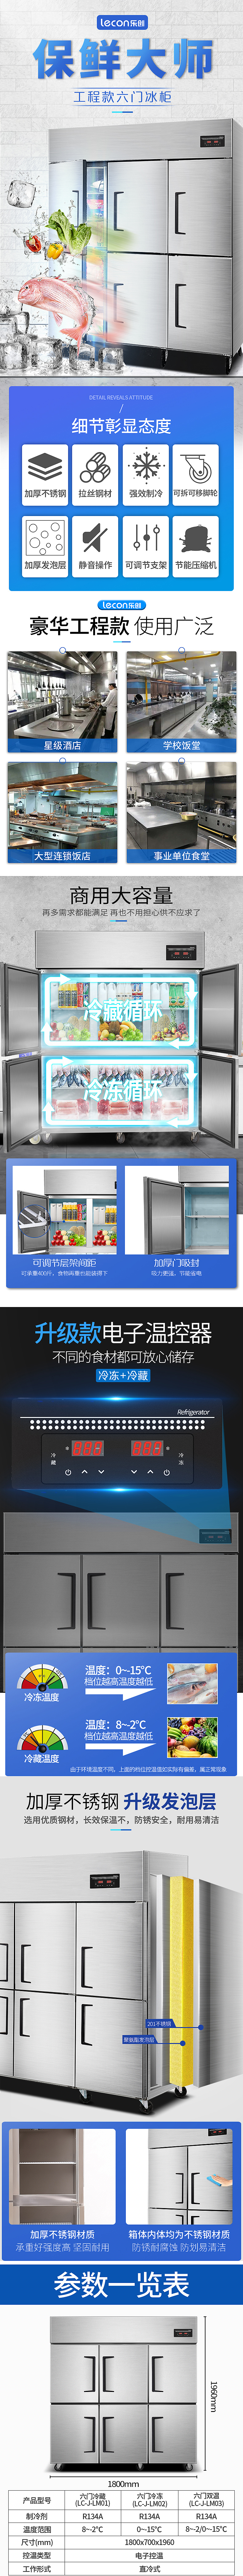 六门冰柜描述.jpg